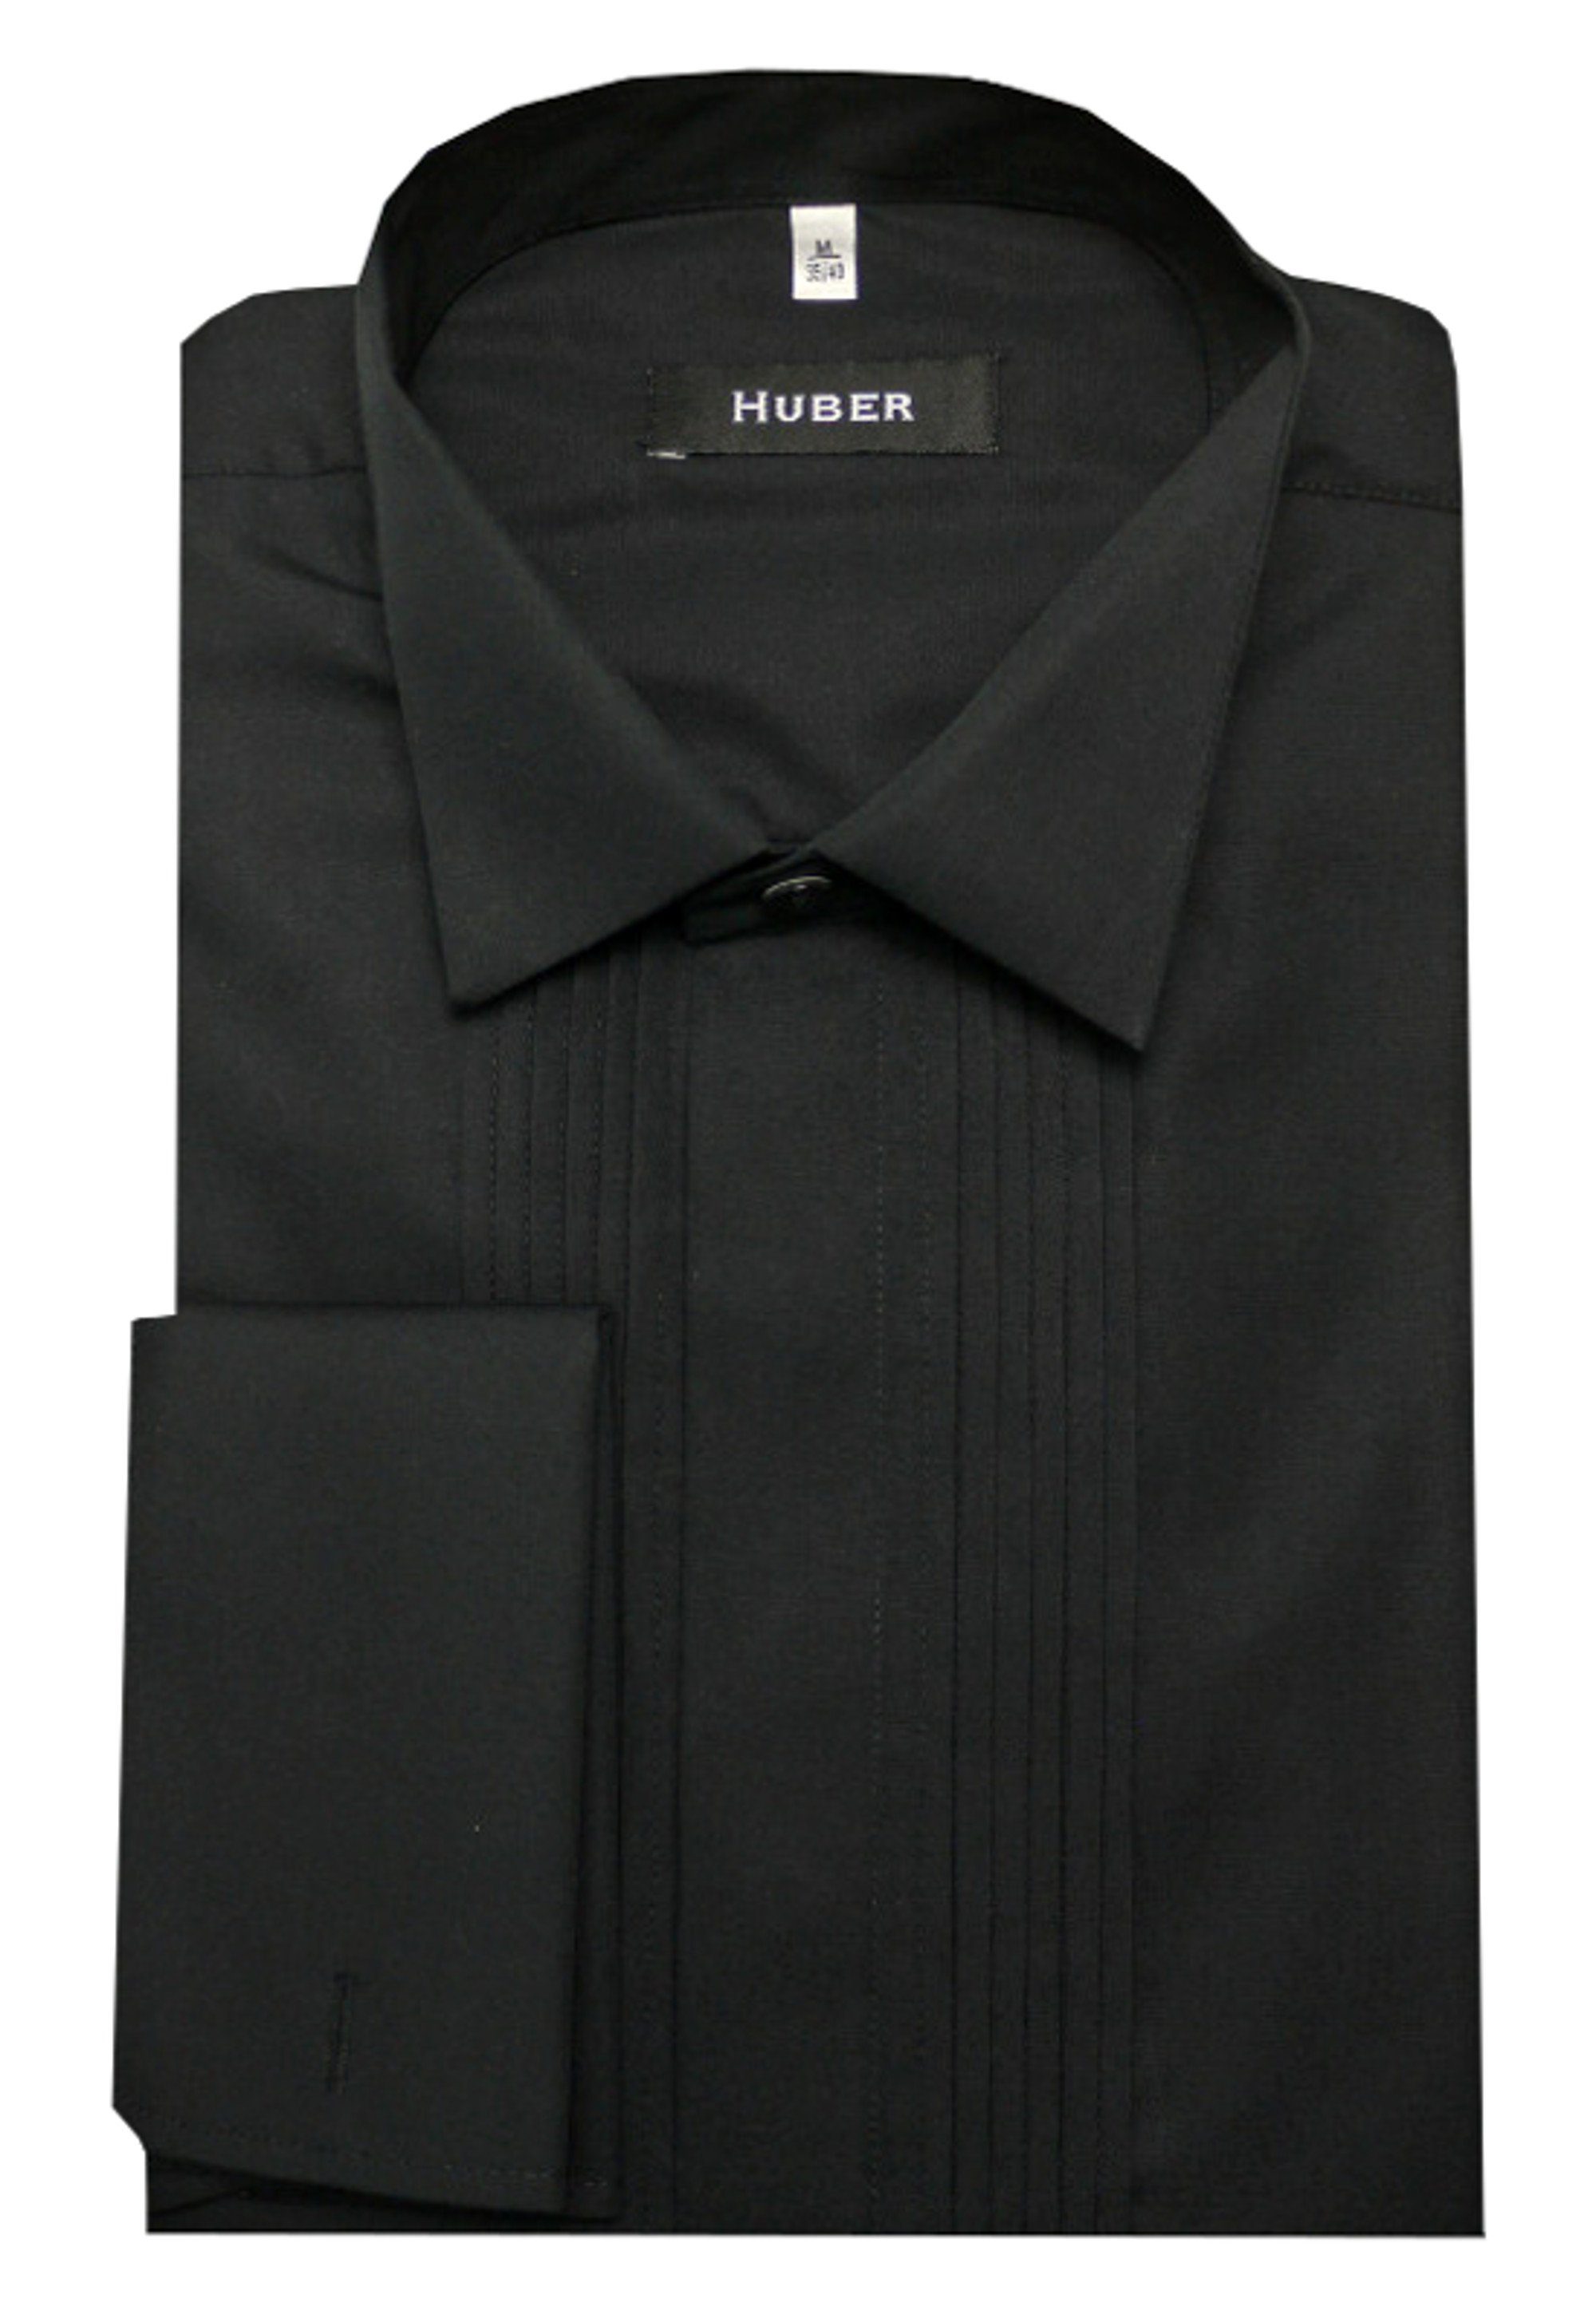 Huber Hemden Smokinghemd HU-0171 Kläppchen-Kragen, Plissee, Umschlag-Manschette, Regular Fit schwarz